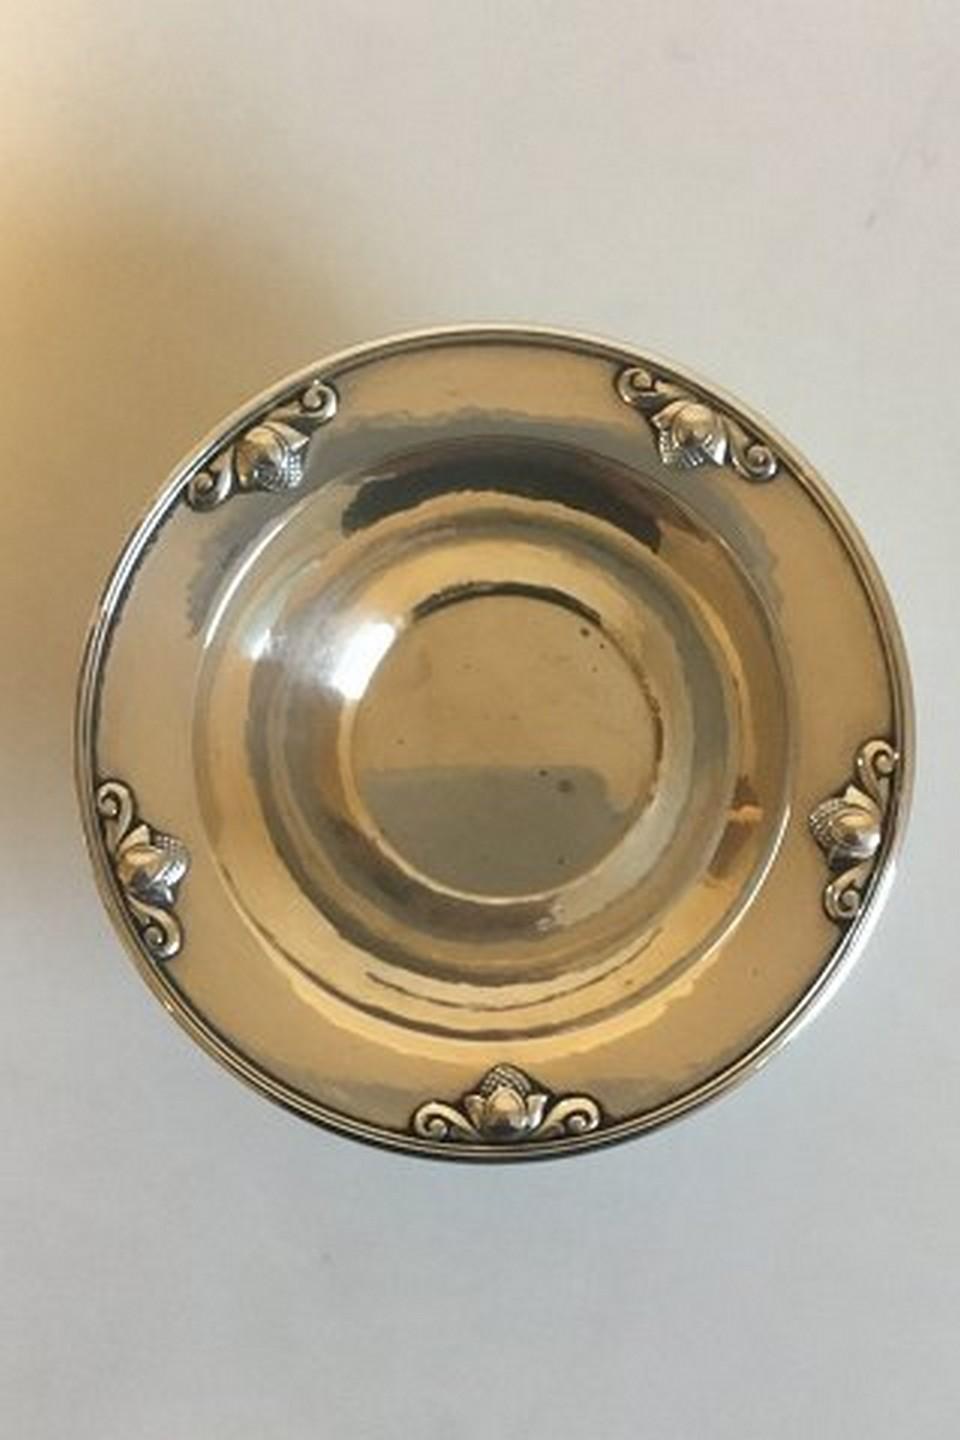 Set of 12 Georg Jensen sterling silver acorn finger bowls no 642

Measures 2